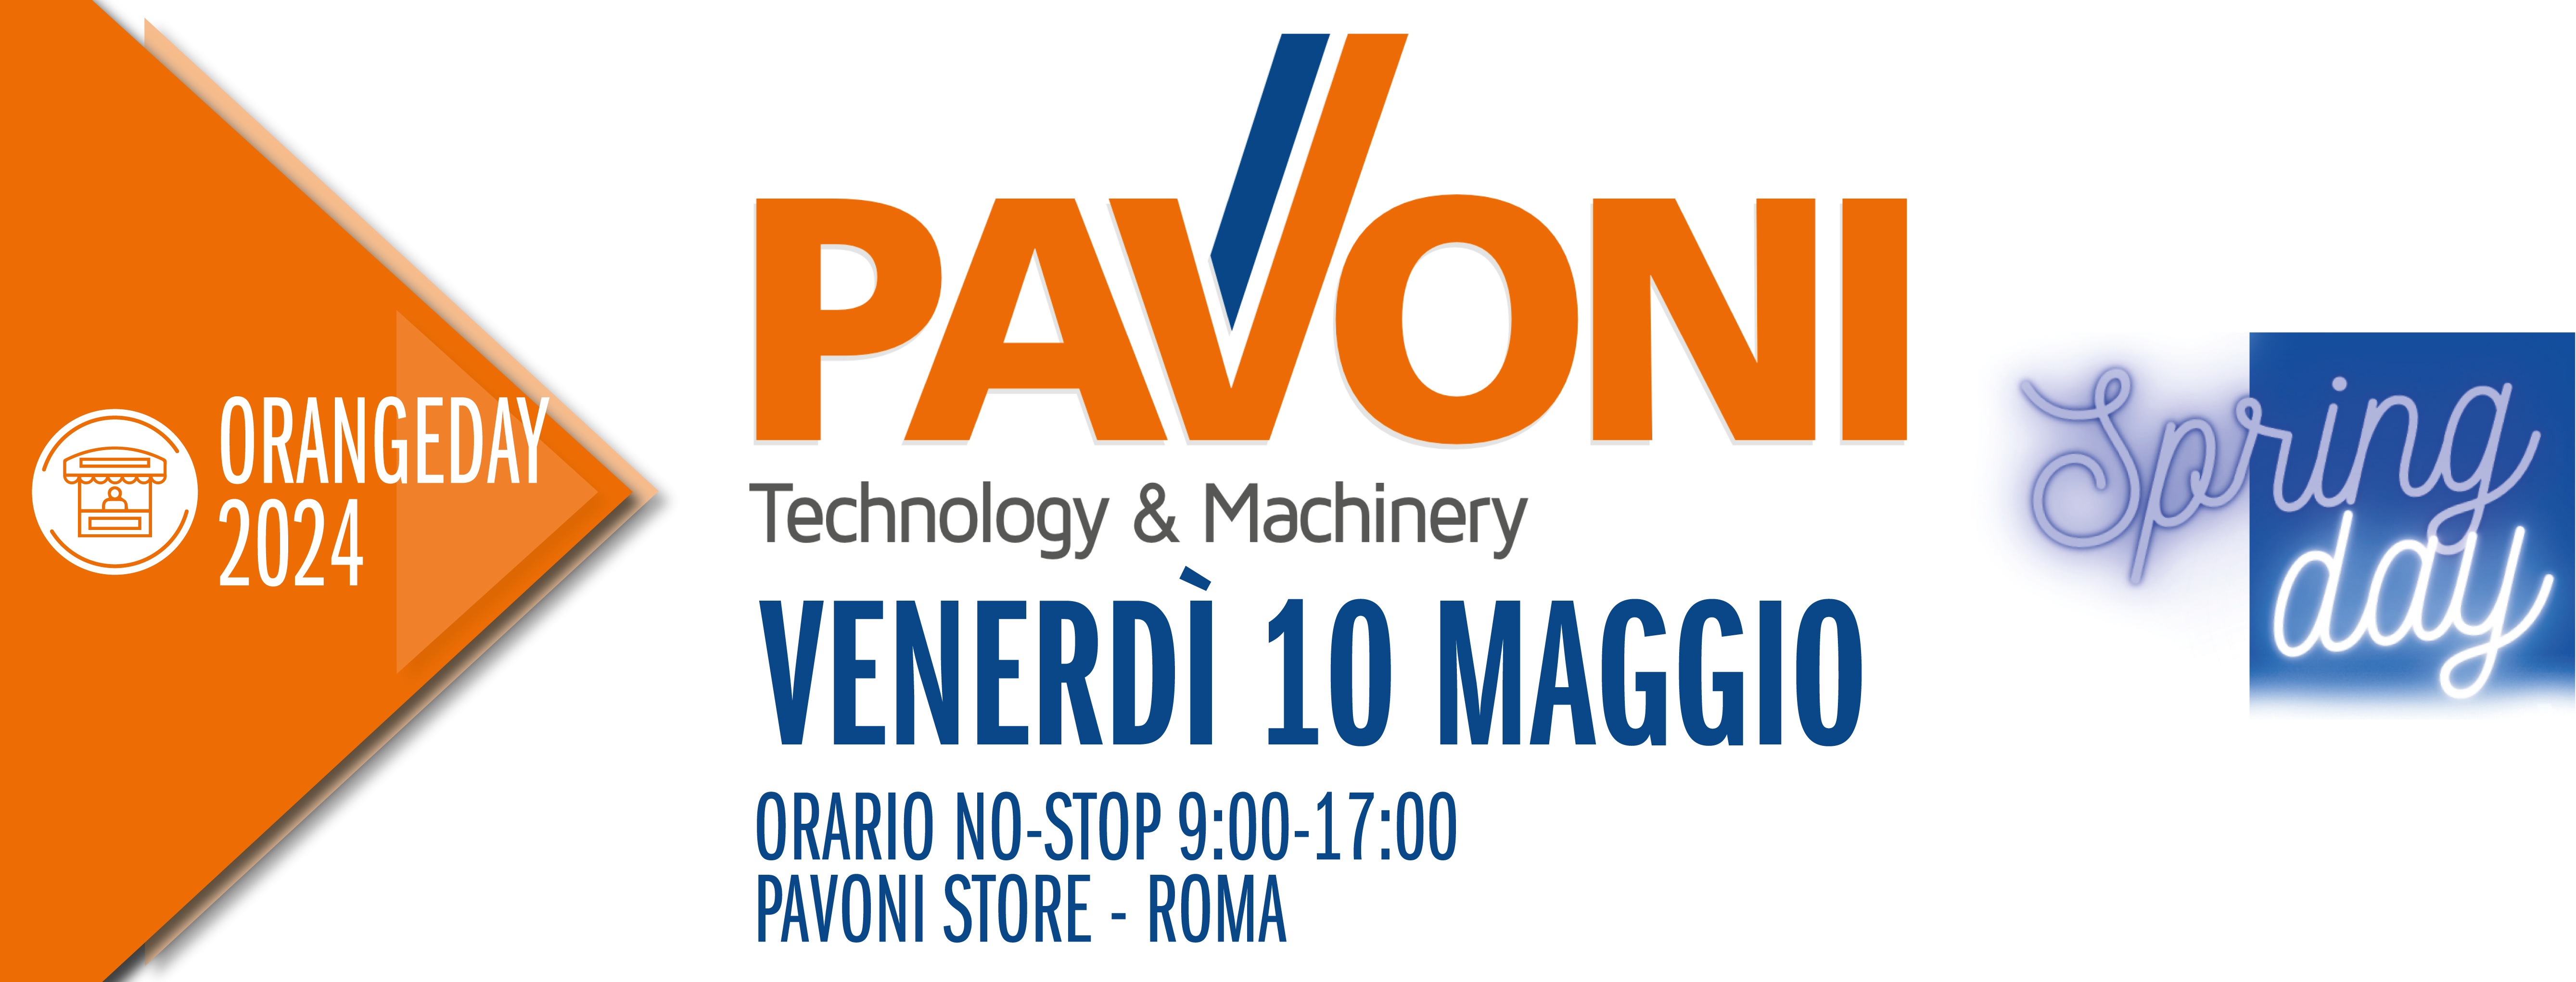 Orange Day - Pavoni Macchine, Roma, 10 Maggio